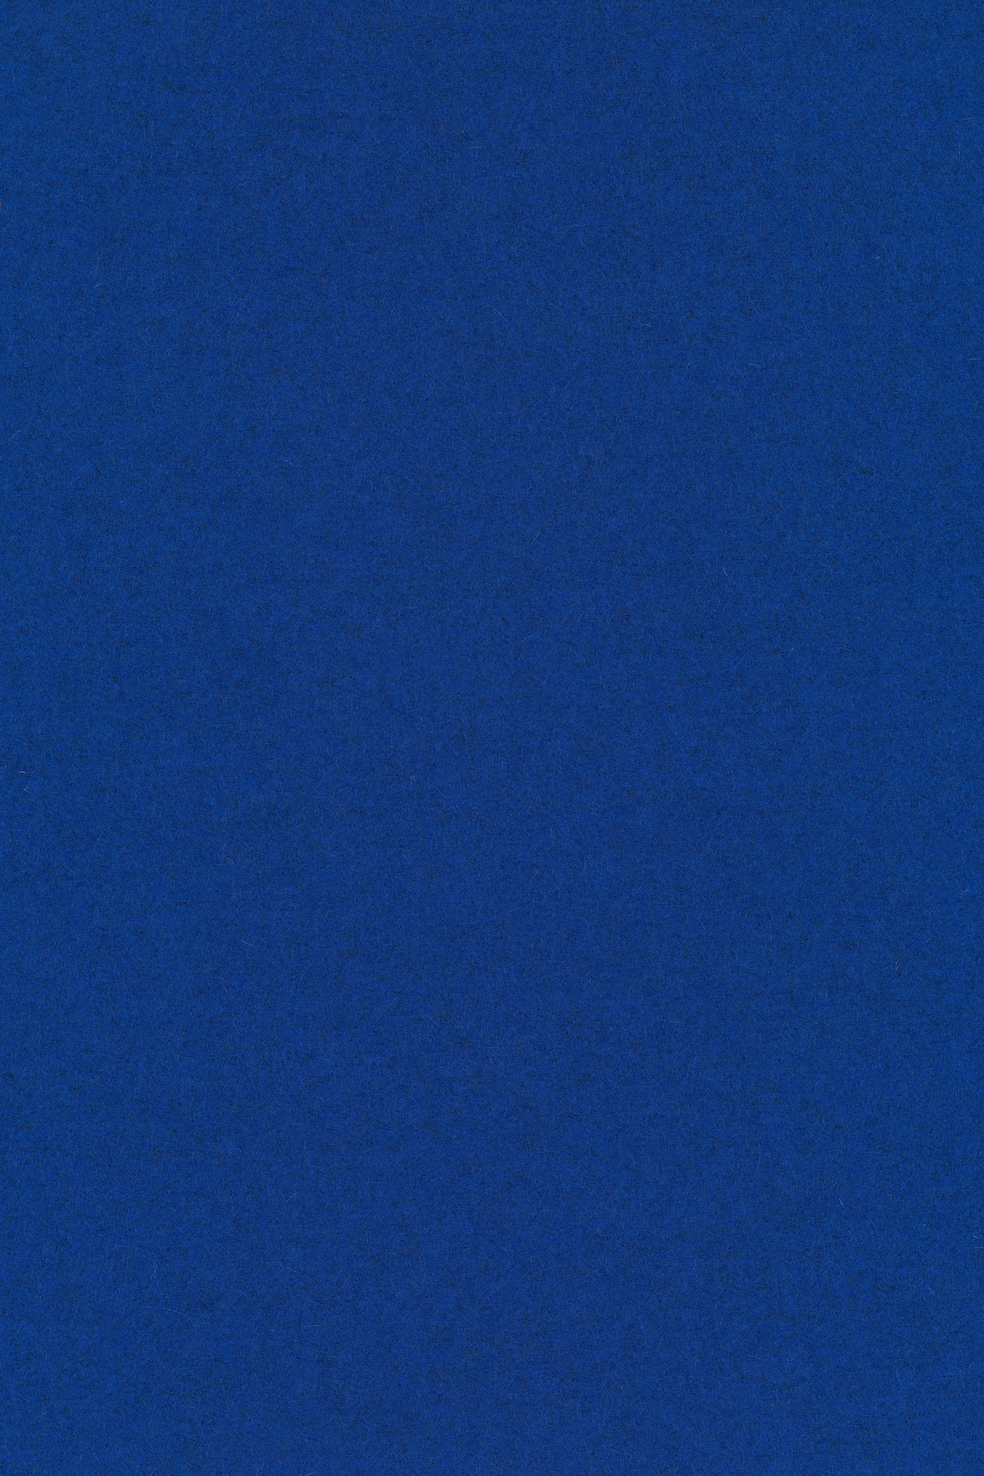 Fabric sample Divina Melange 3 757 blue